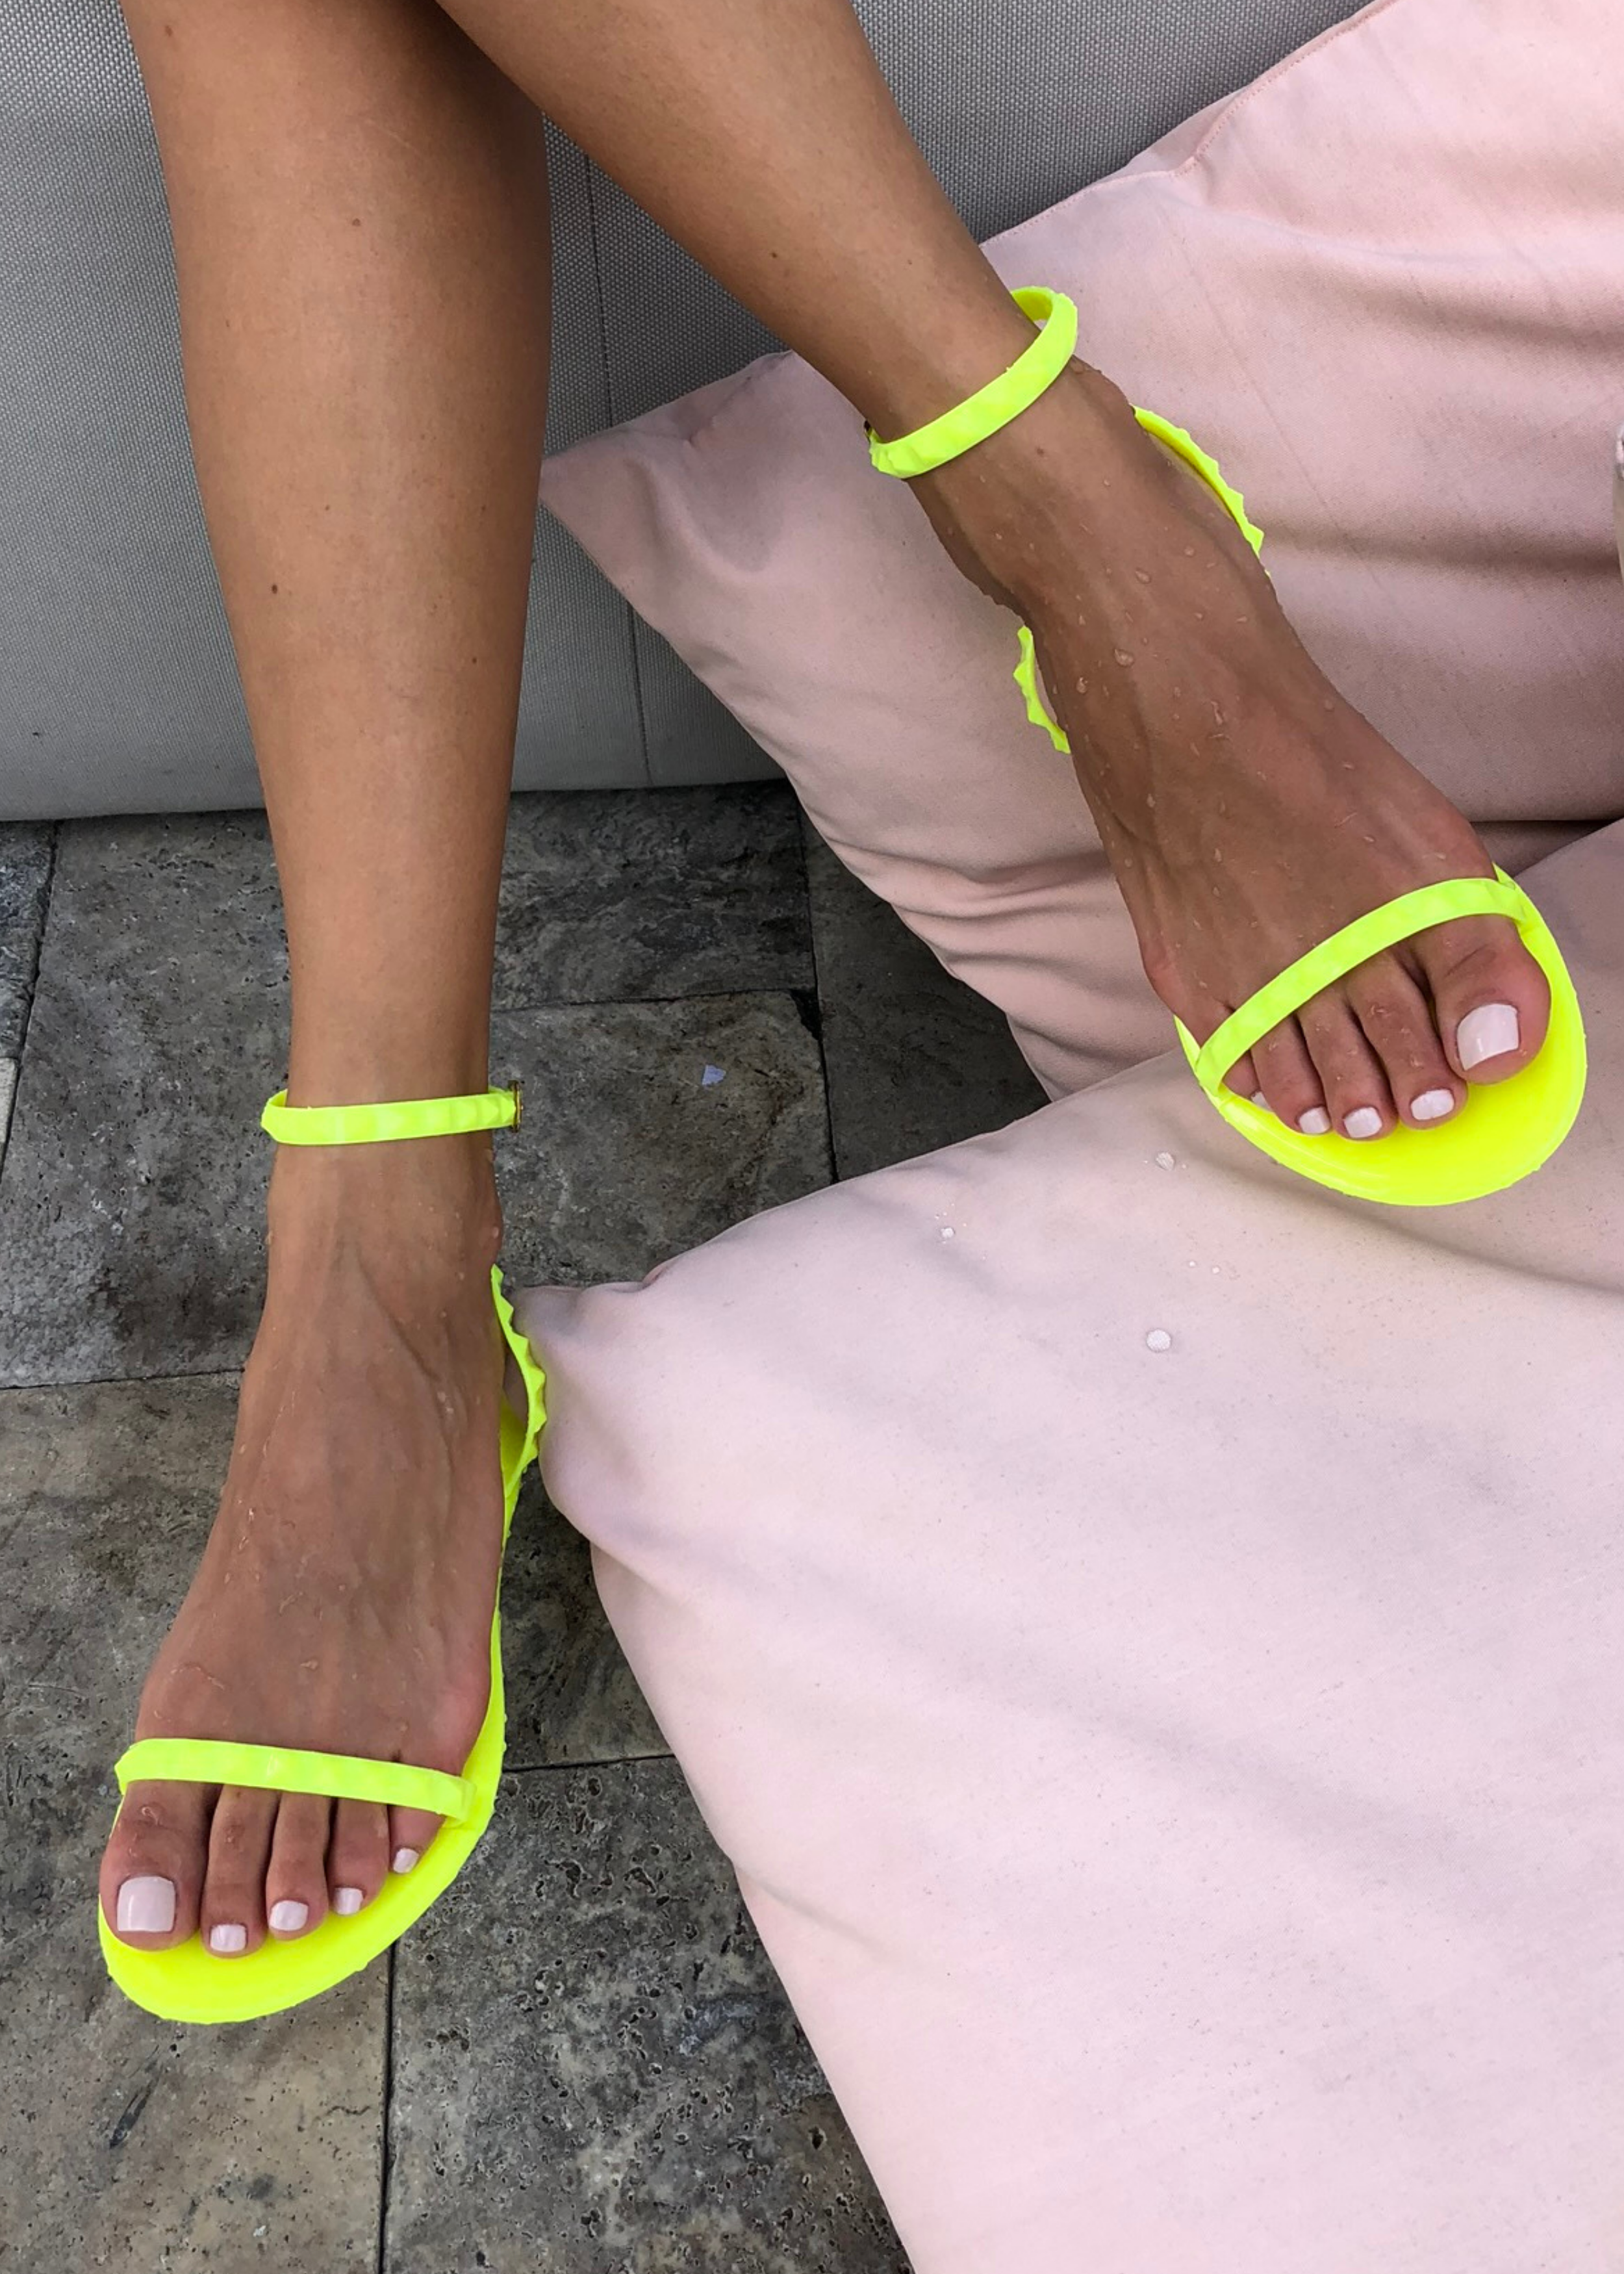 Sandals Designer By Rebecca Minkoff Size: 7